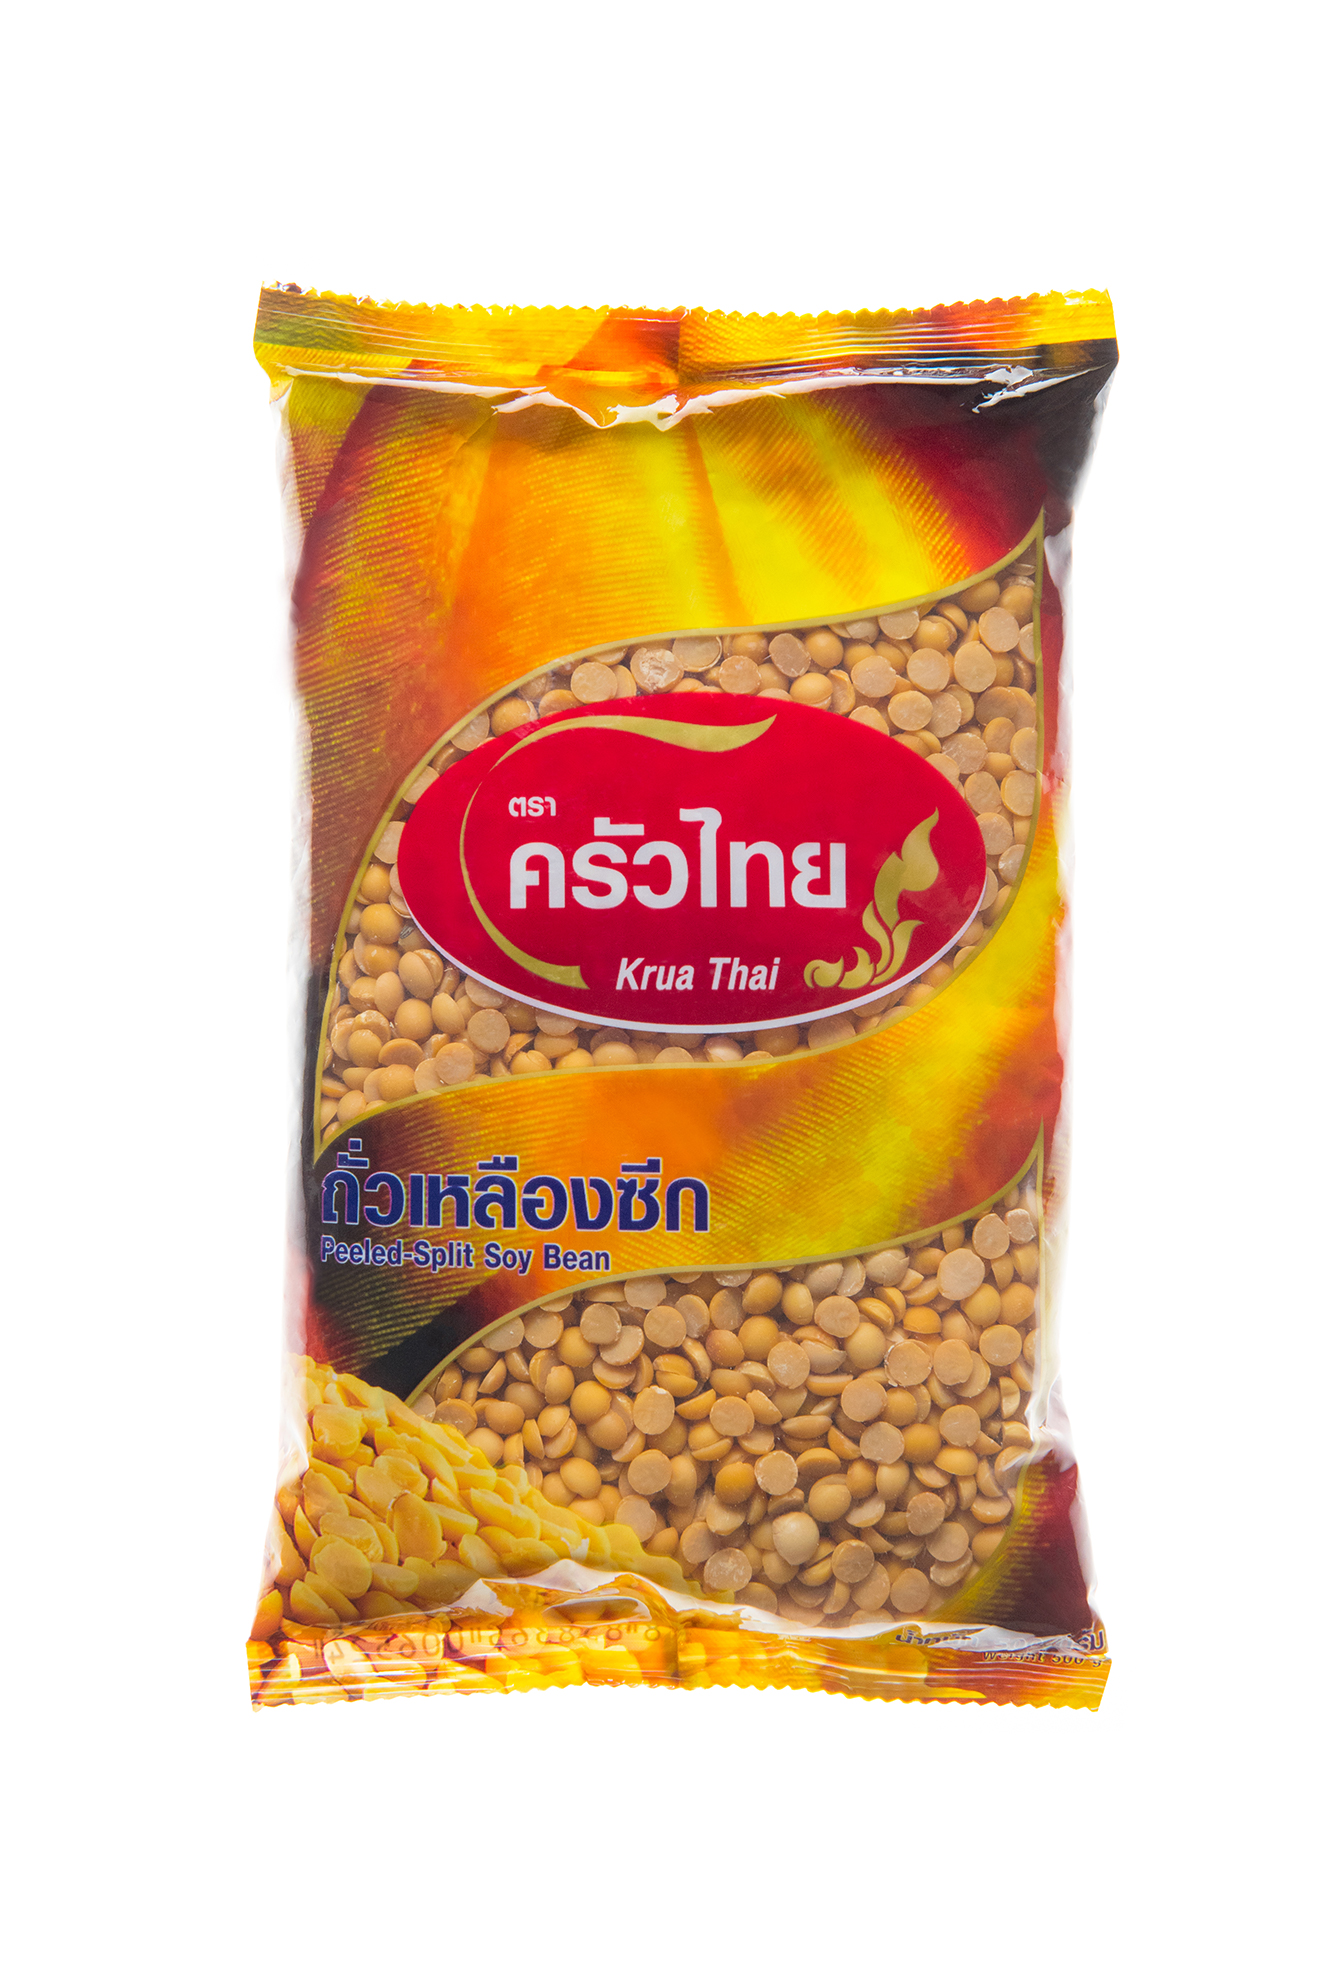 ถั่วเหลืองซีก ครัวไทย 500 กรัม / Soy bean Krua Thai 500 g.